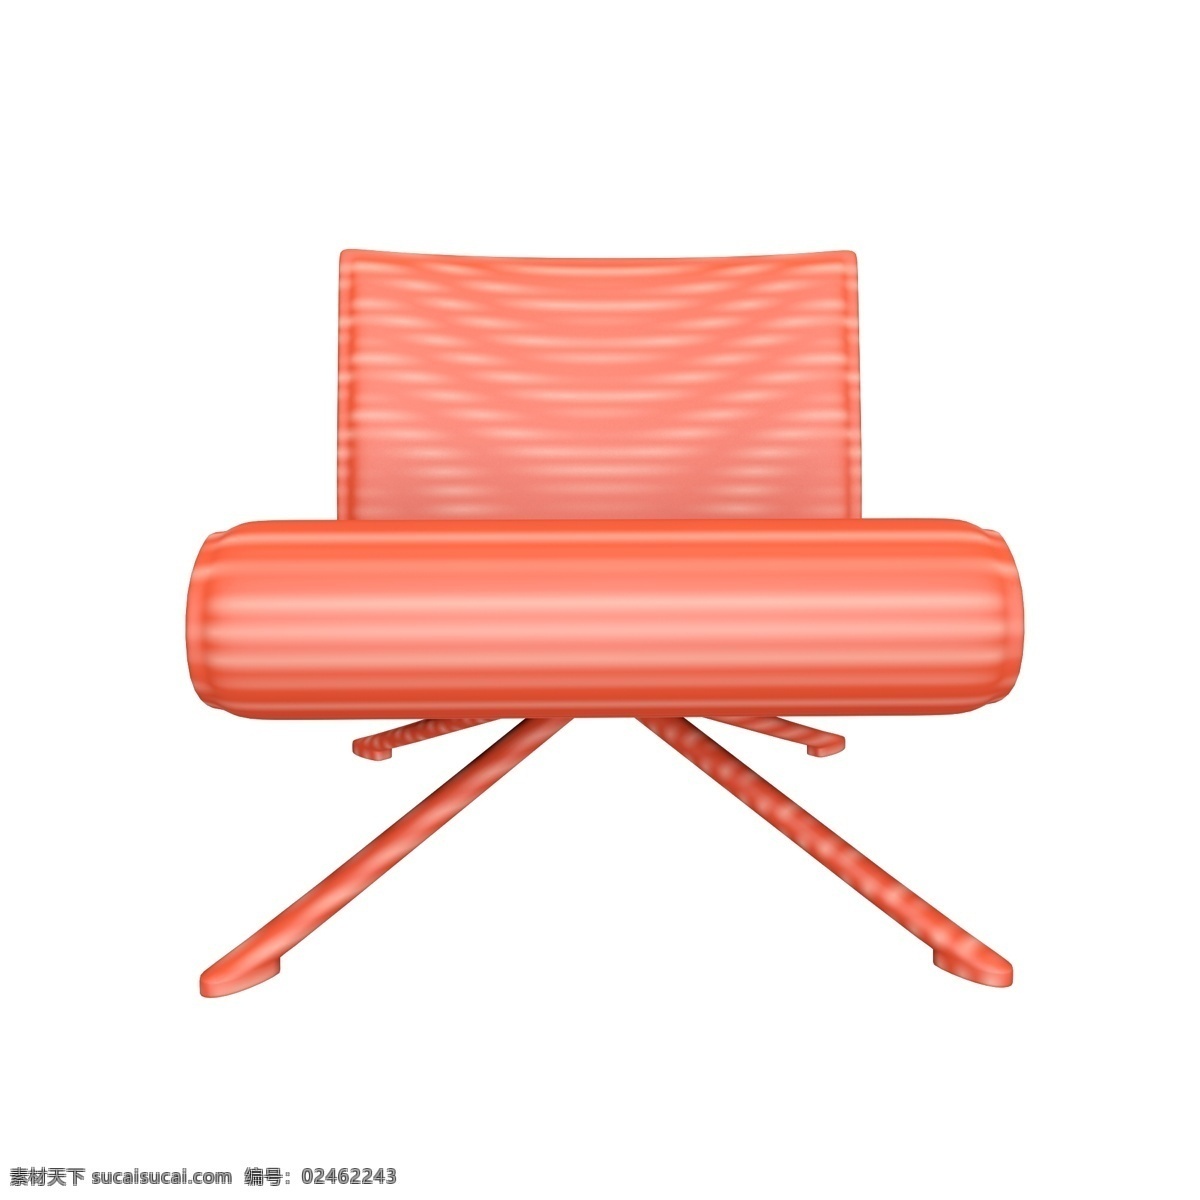 创意 条形 座椅 装饰 室内家具 家居用品 立体家具 立体 家具 舒适沙发 软座 c4d